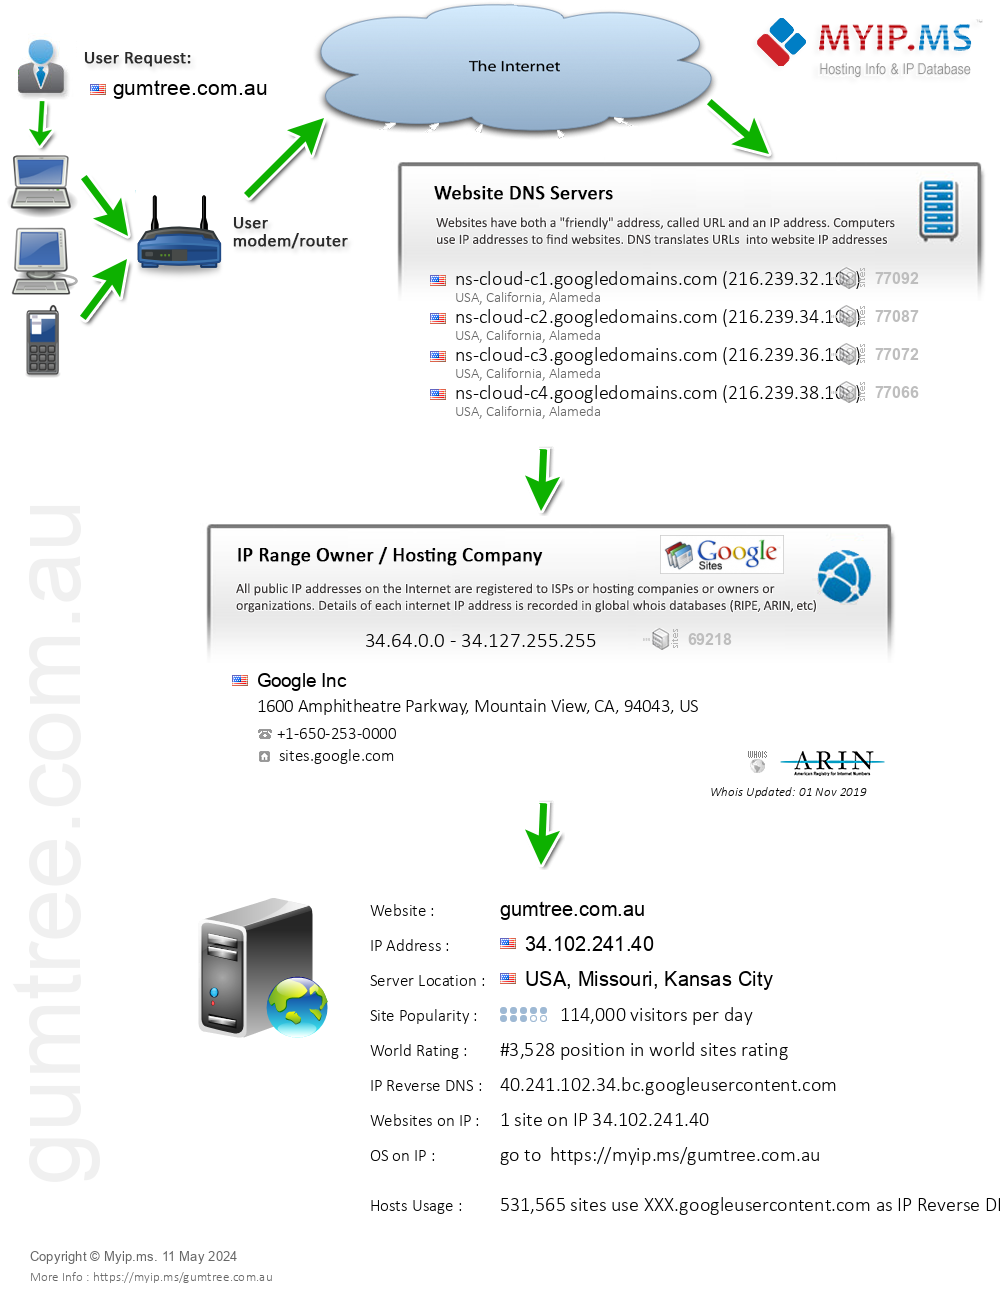 Gumtree.com.au - Website Hosting Visual IP Diagram